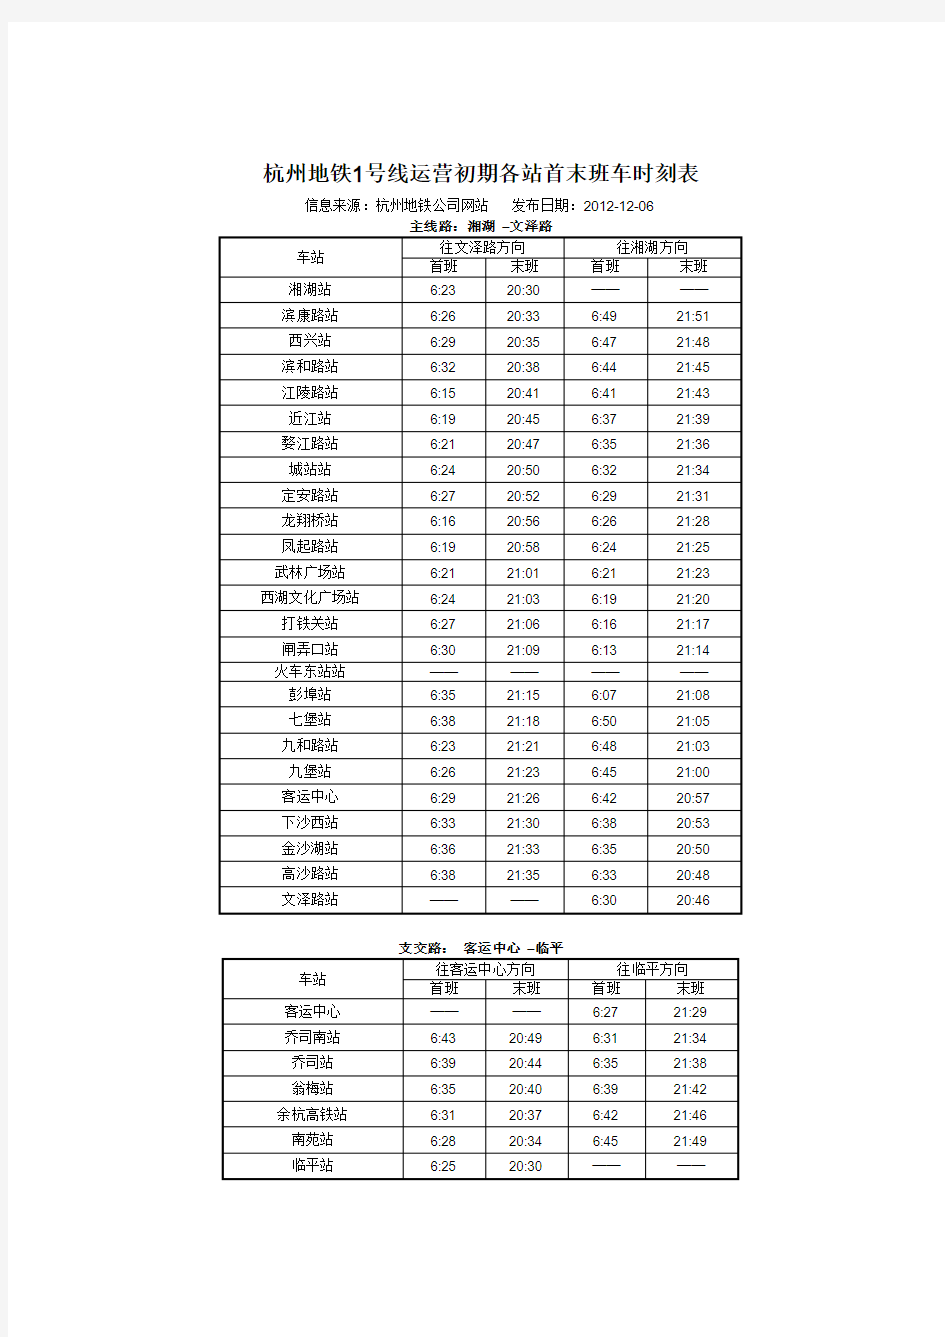 杭州地铁1号线运营初期各站首末班车时刻表(2012年12月起)